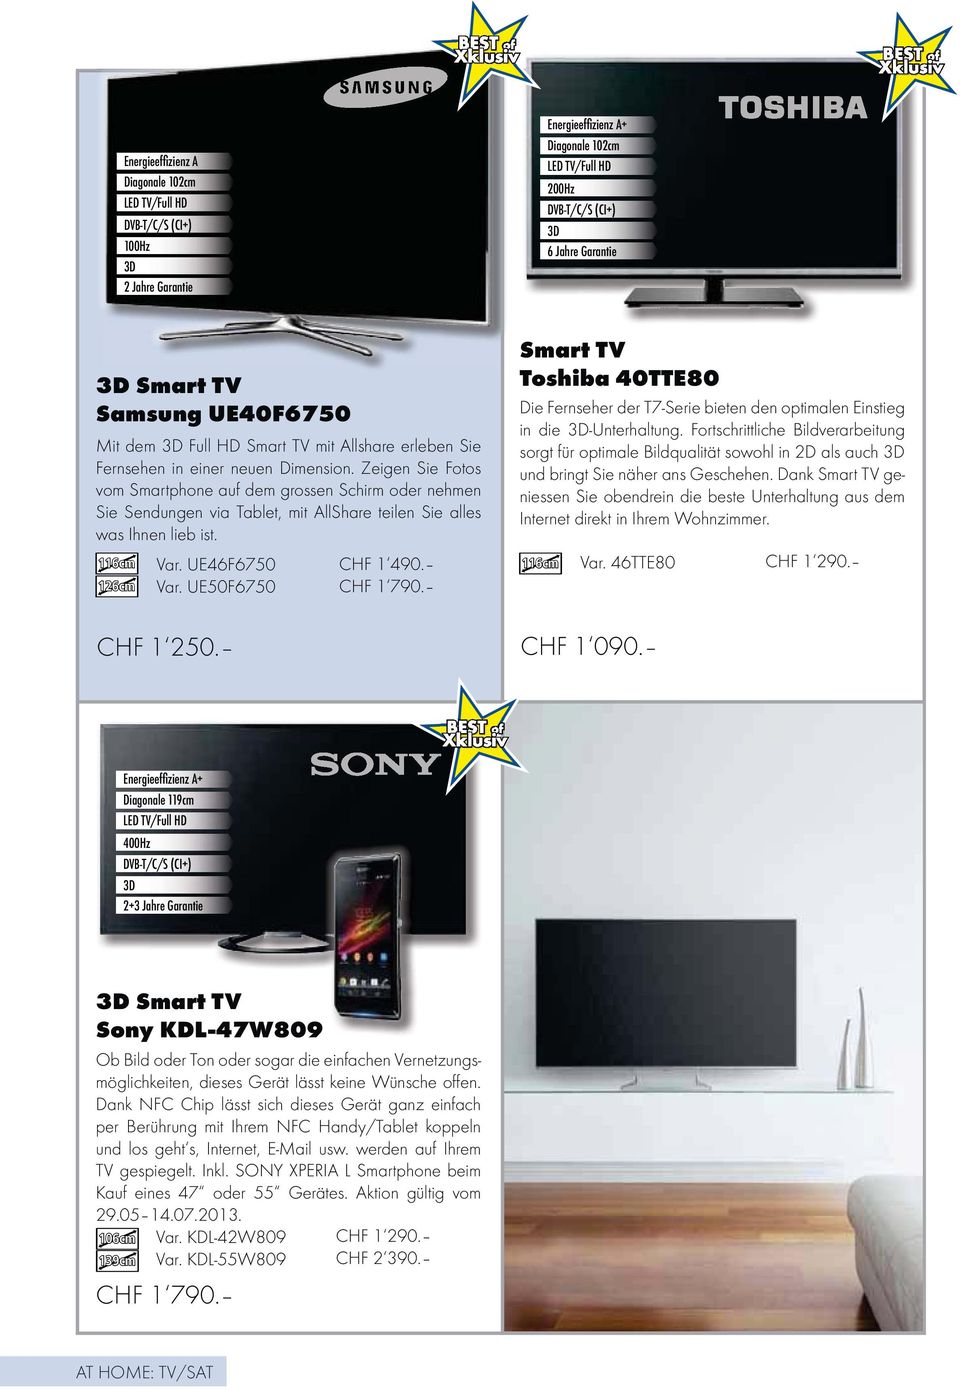 Var. UE46F6750 CHF 1 490. 126cm Var. UE50F6750 CHF 1 790. 116cm 116cm Smart TV Toshiba 40TTE80 Die Fernseher der T7-Serie bieten den optimalen Einstieg in die 3D-Unterhaltung.